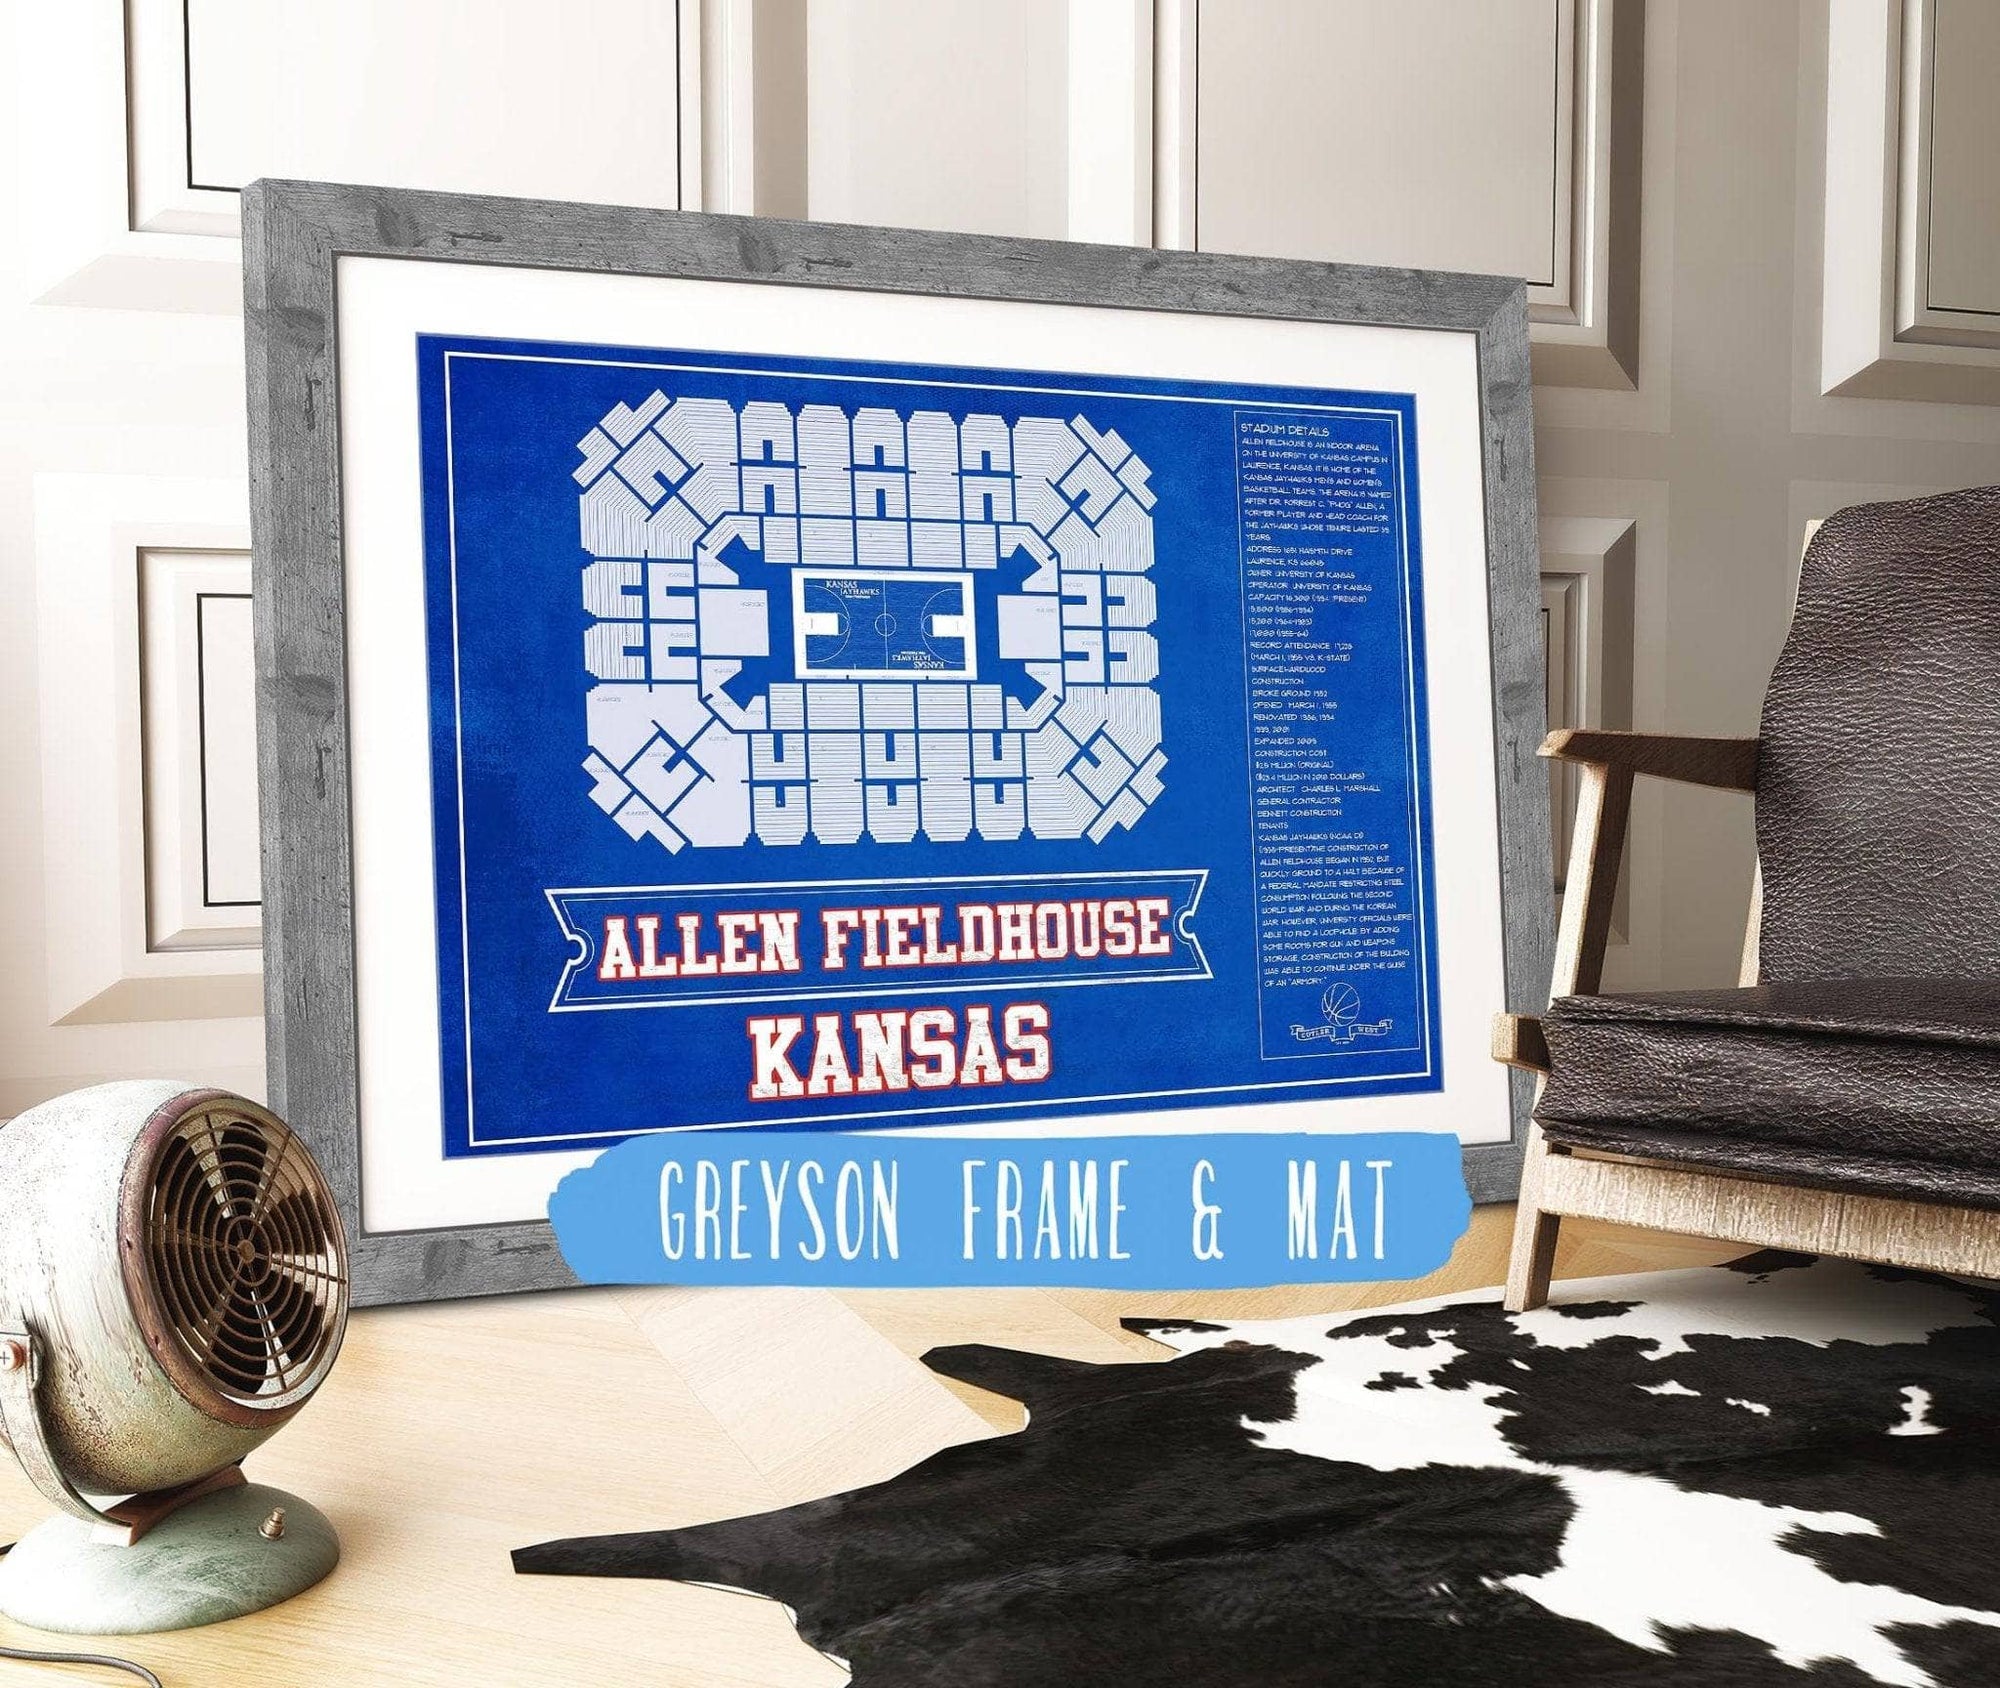 Cutler West Basketball Collection 14" x 11" / Greyson Frame & Mat Kansas Jayhawks - Allen Fieldhouse Seating Chart - College Basketball Blueprint Team Color Art 662070564-TEAM_82048